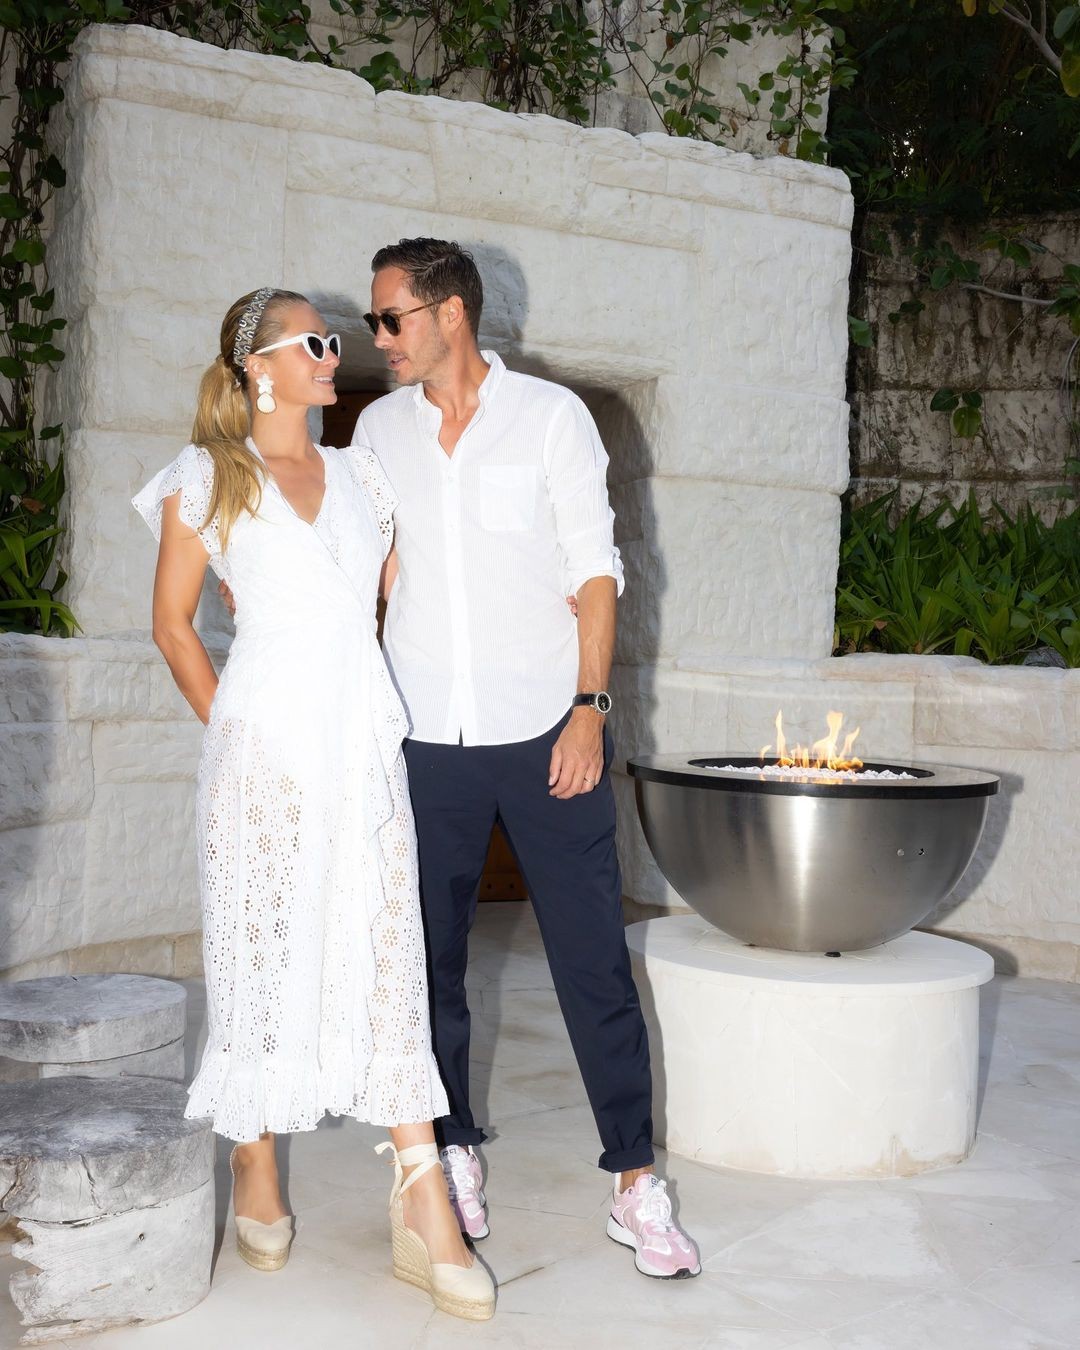 Paris Hilton agradece o marido, Carter Reum, por aniversário (Foto: Reprodução/Instagram)